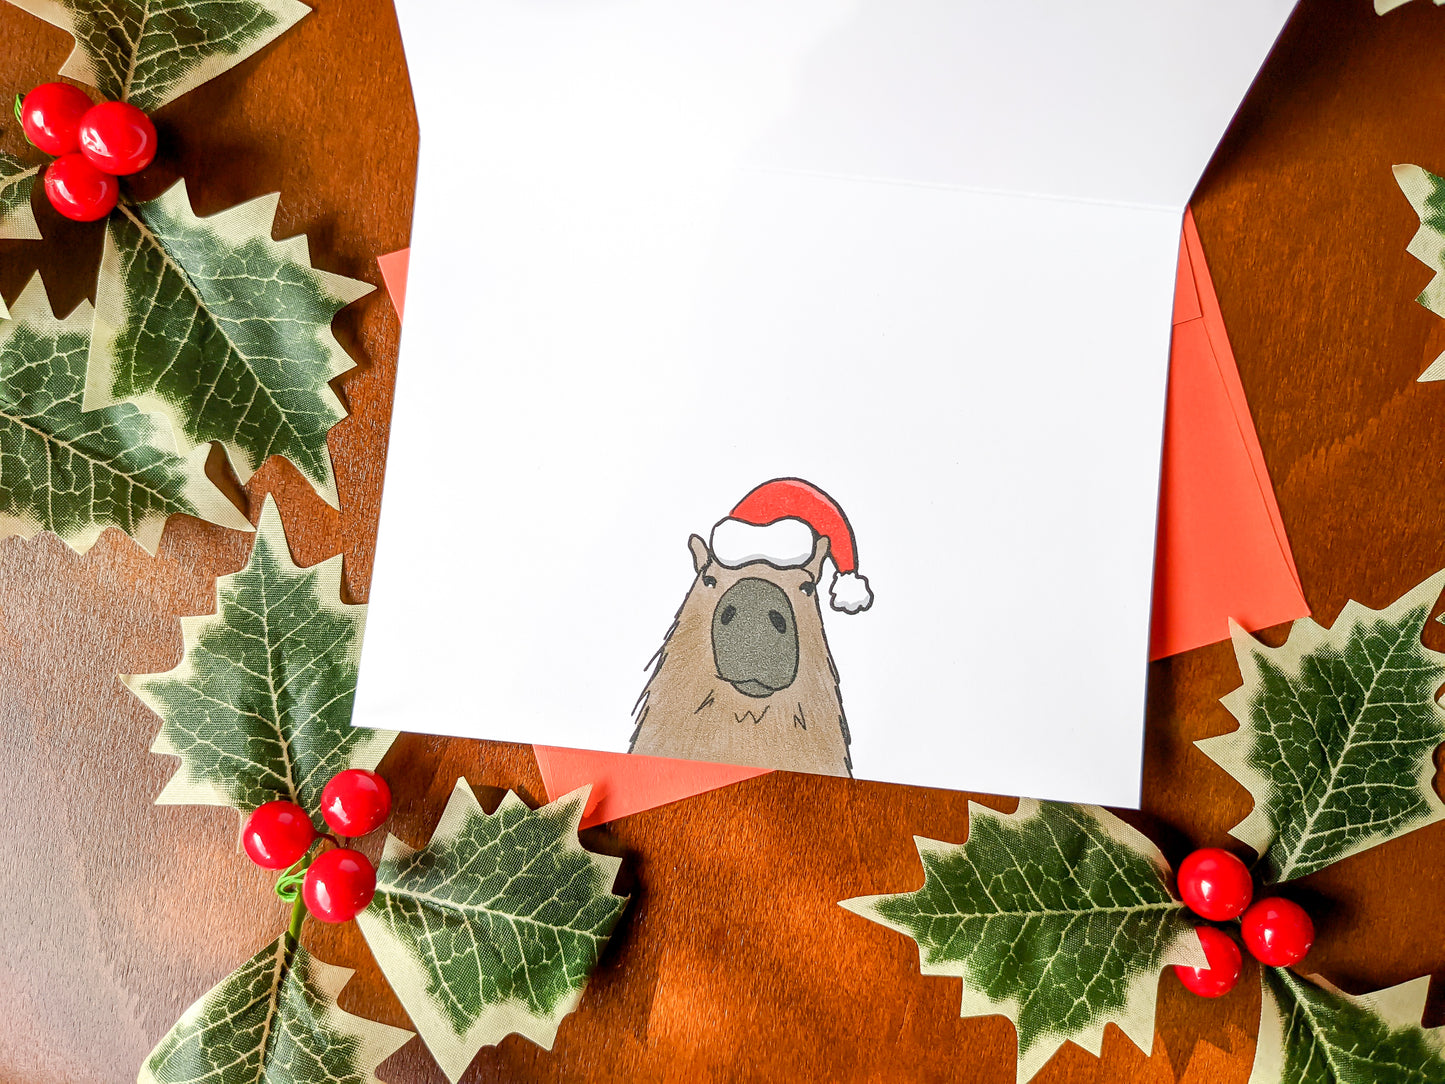 Capybara Holiday Card